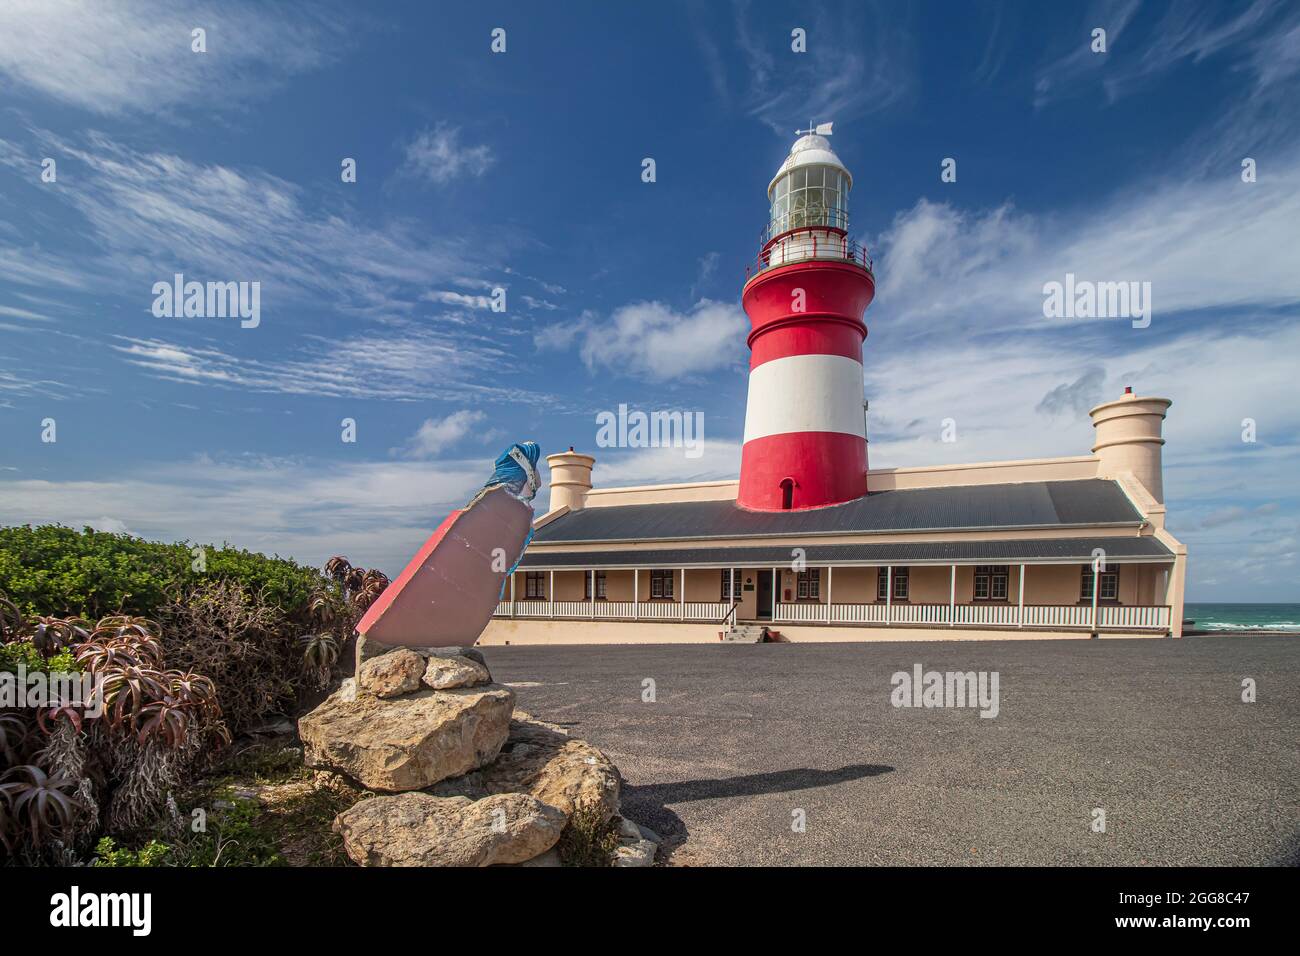 Cape Agulhas Lighthouse, der zweitälteste noch in Betrieb befindliche Leuchtturm Südafrikas, der sich ebenfalls am südlichsten Punkt Afrikas befindet. Stockfoto